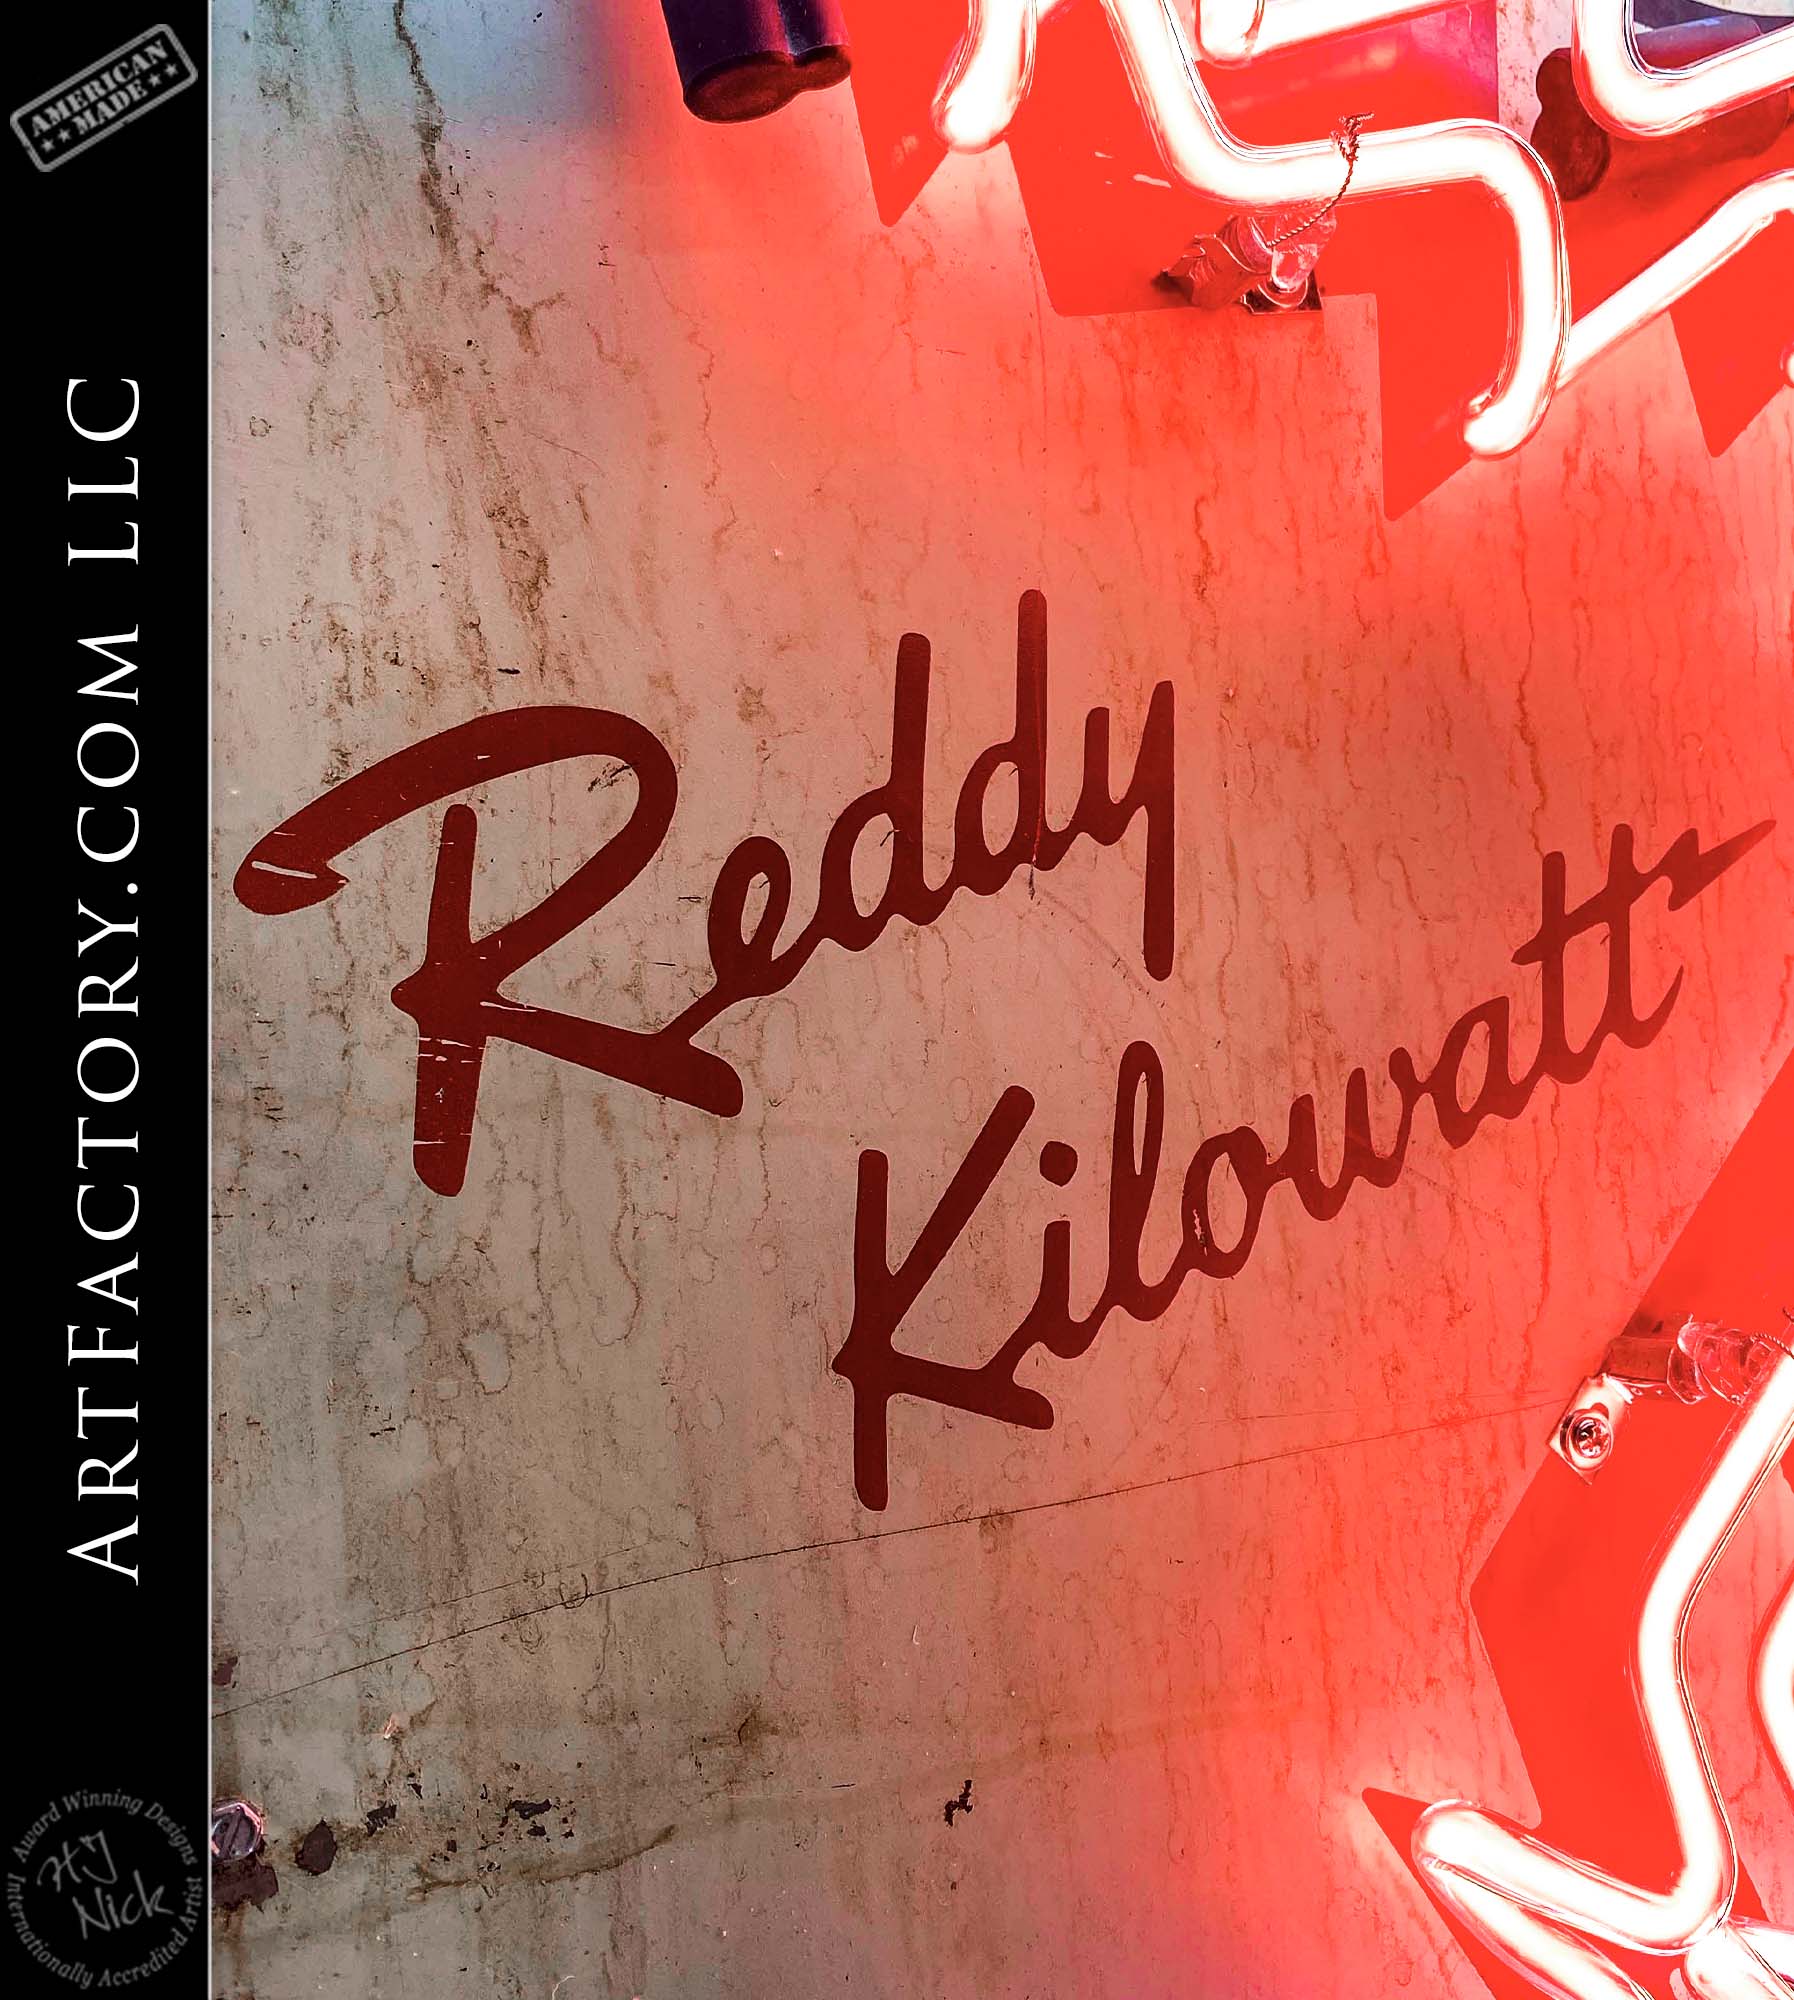 Vintage Rare Ohio Power Reddy Kilowatt Neon Sign